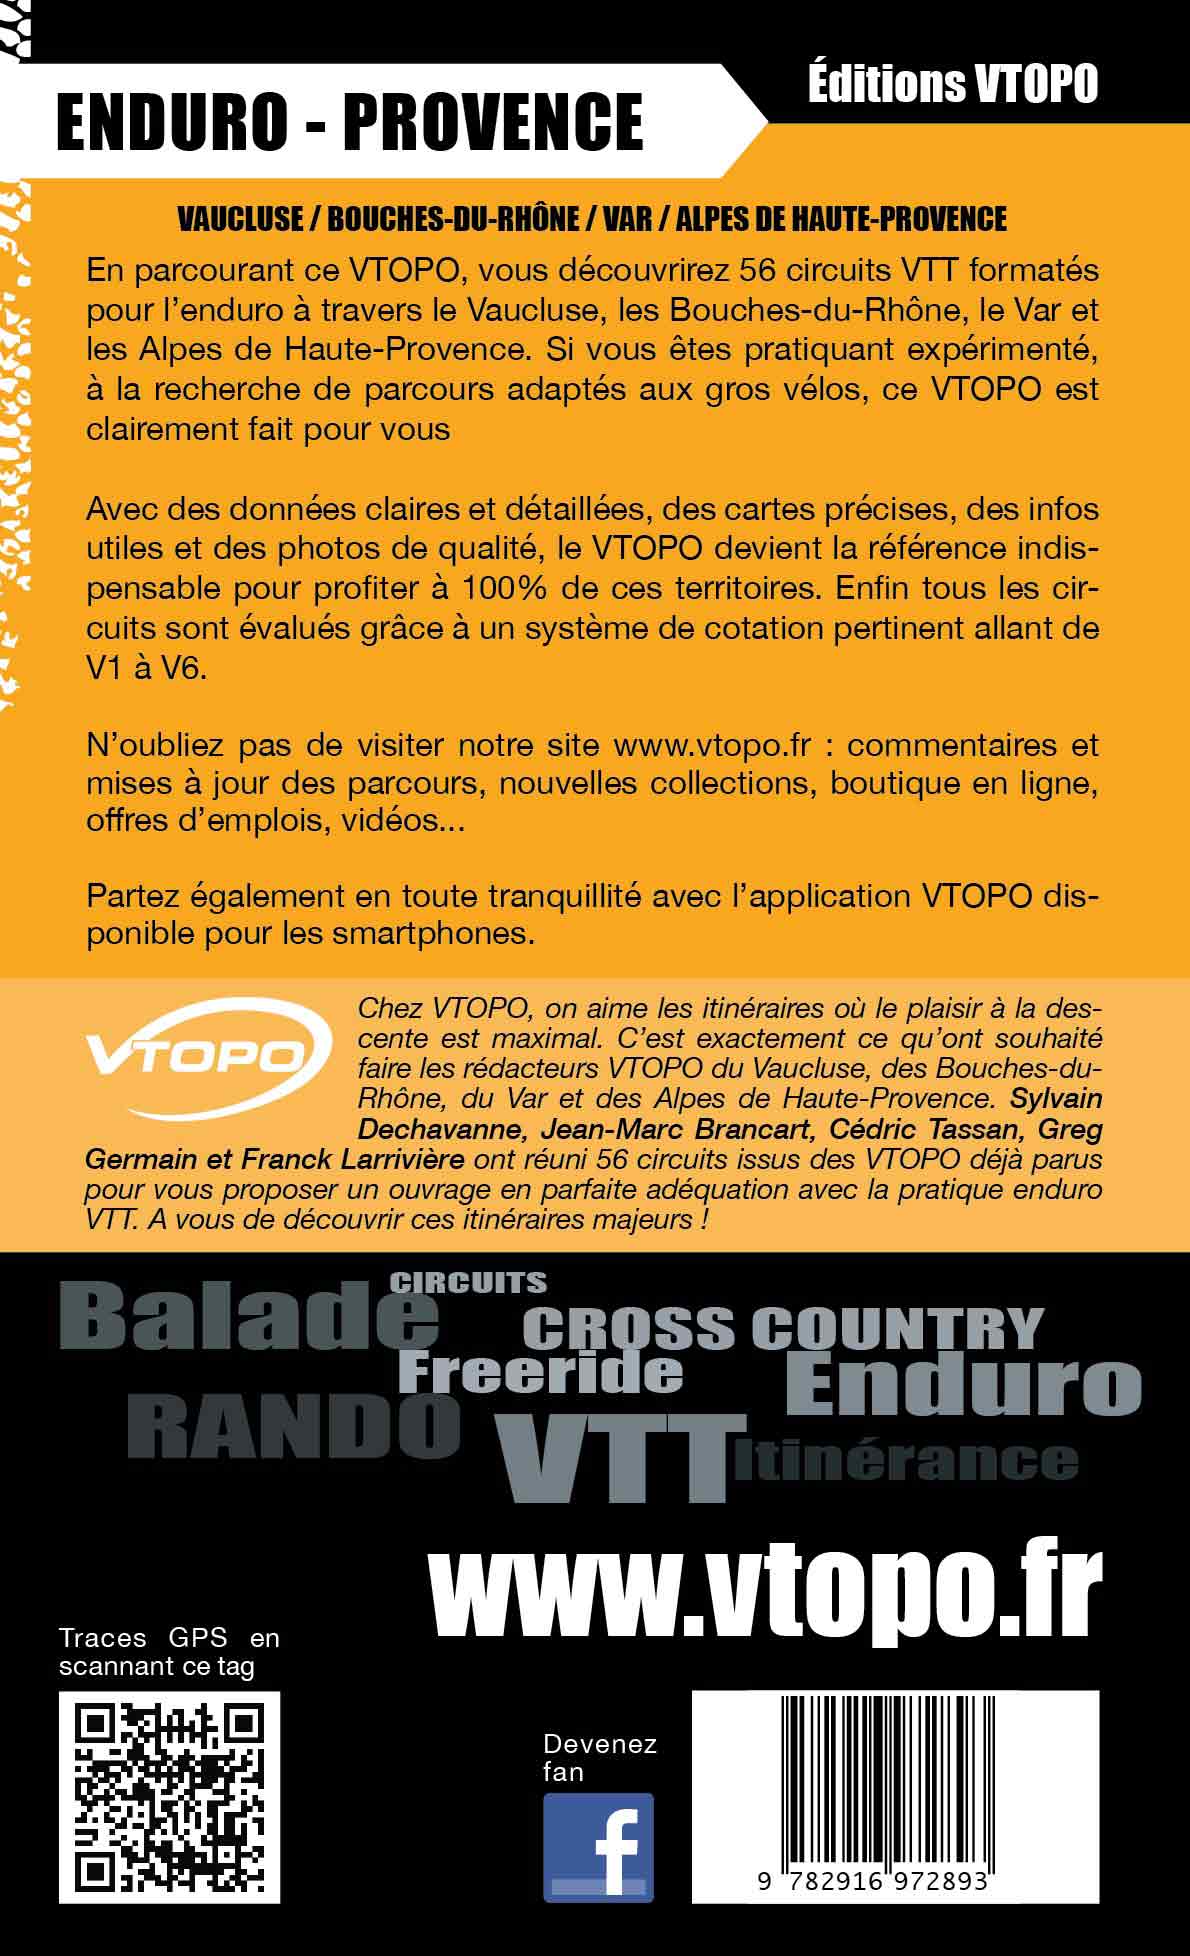 VTOPO VTT Enduro Provence